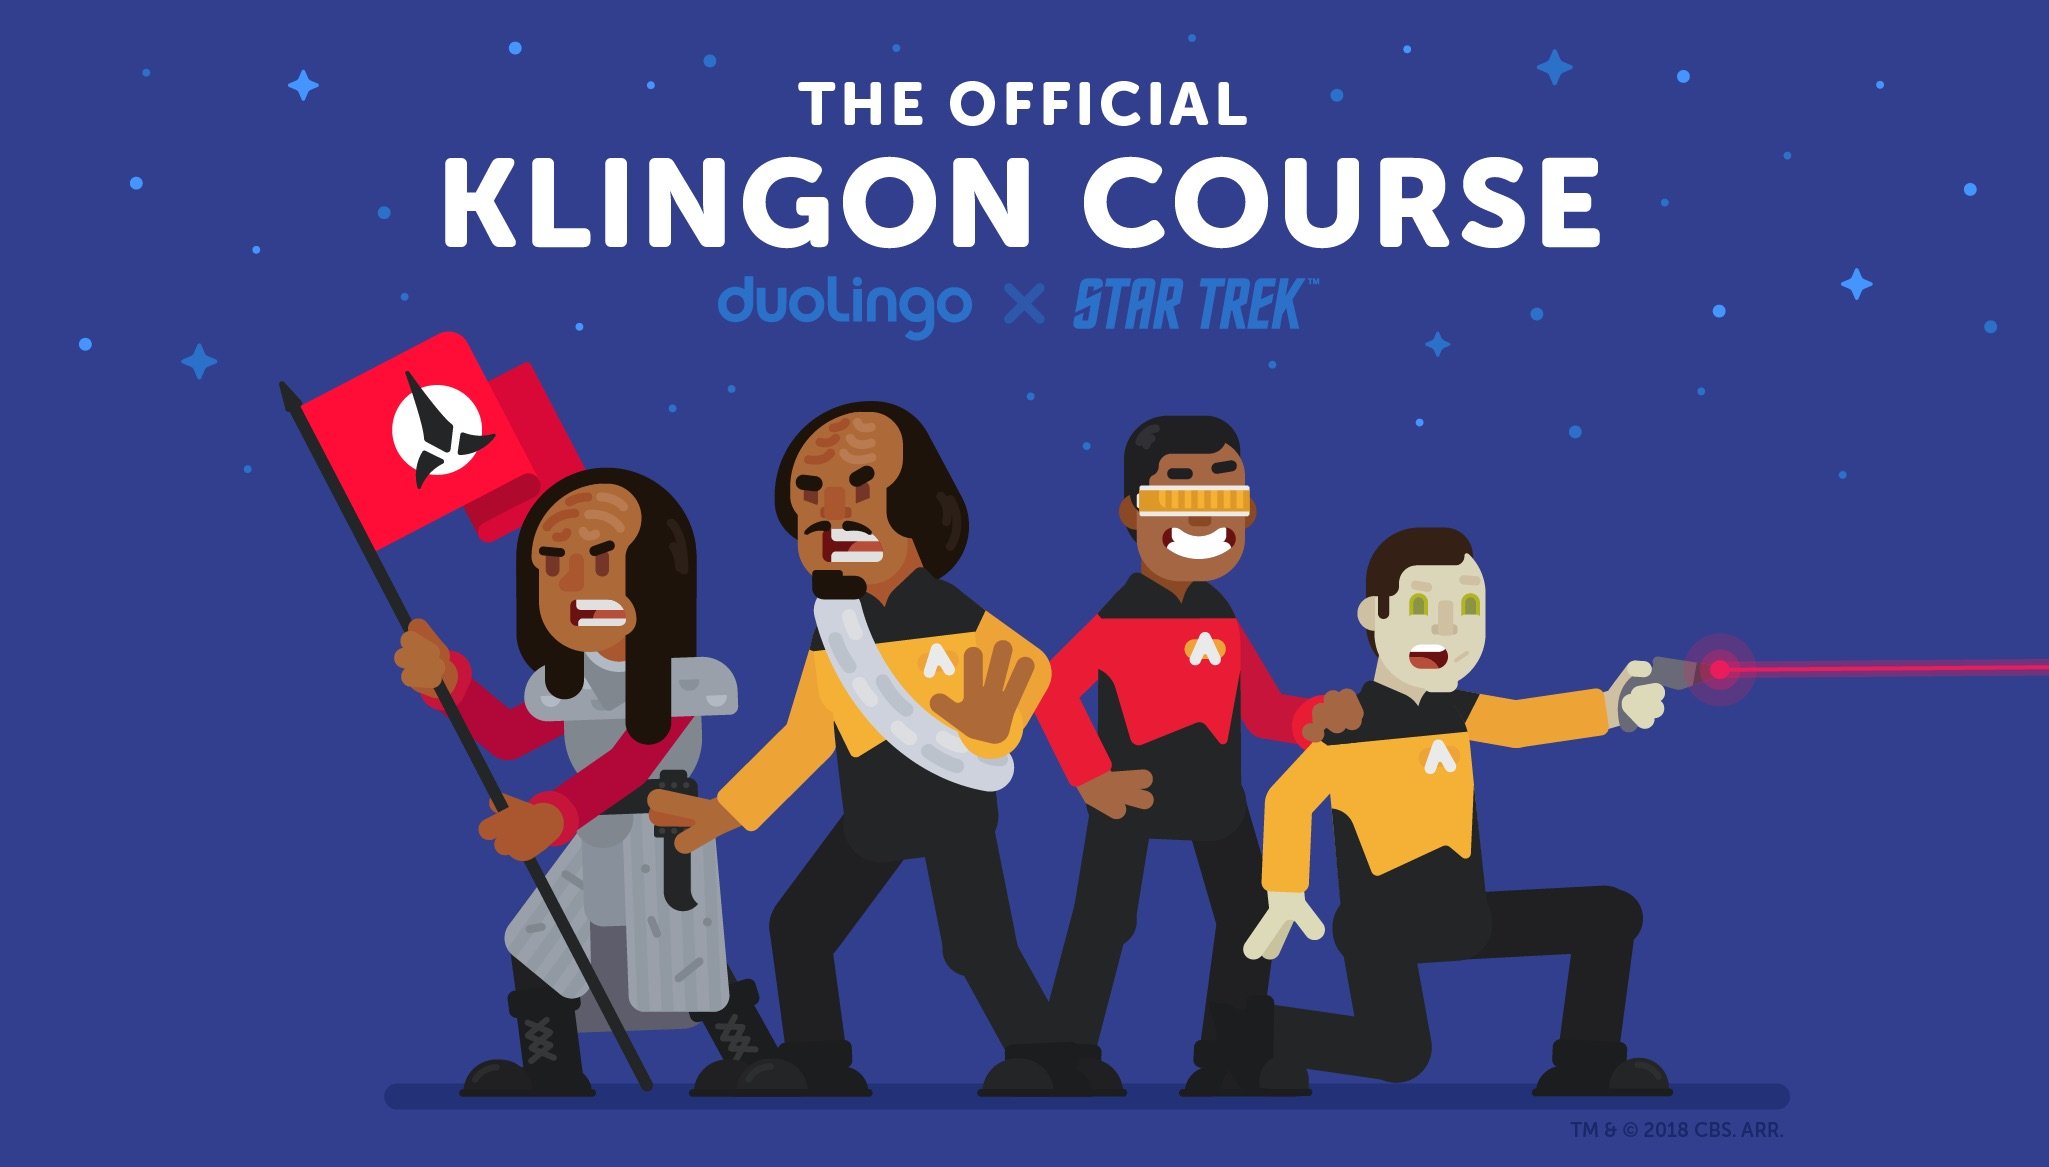 Öğrenmek klingon dili, Star Trek şimdi herkes olabilir